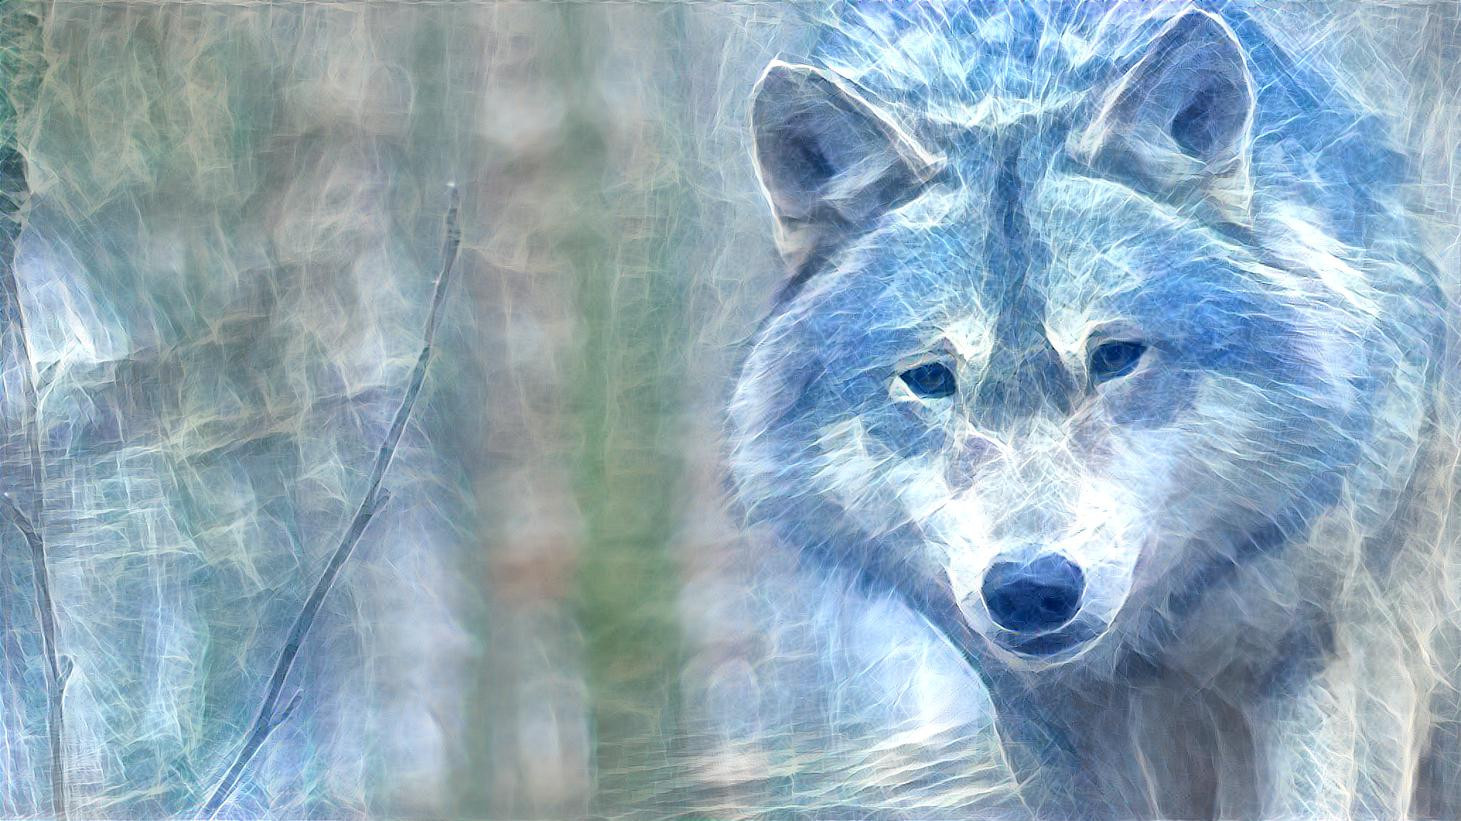 Ghost Wolf: https://www.instagram.com/p/CIarbF_BHzM/